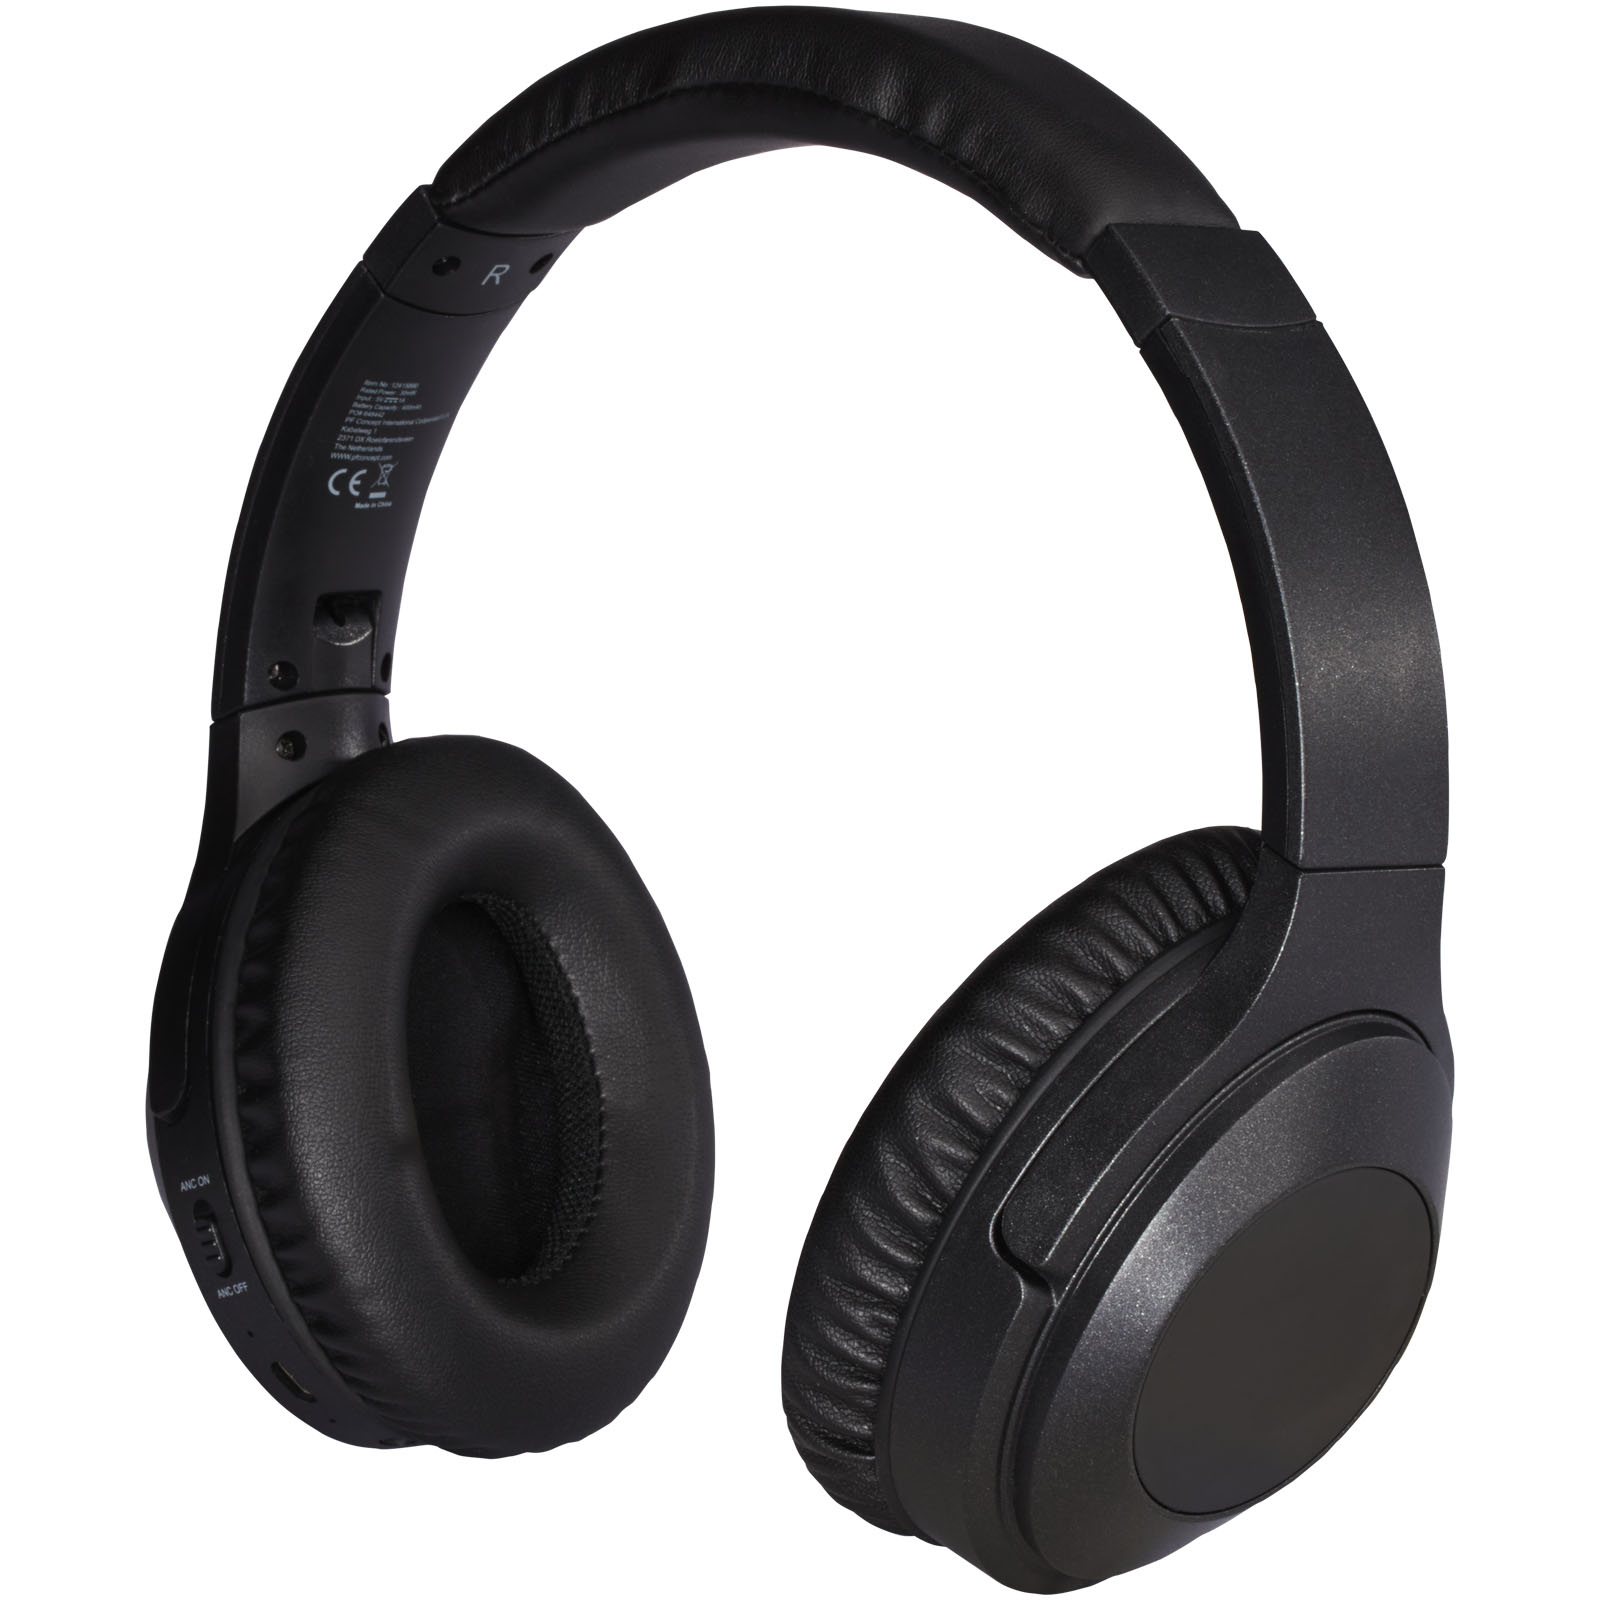 Headphones - Anton ANC headphones